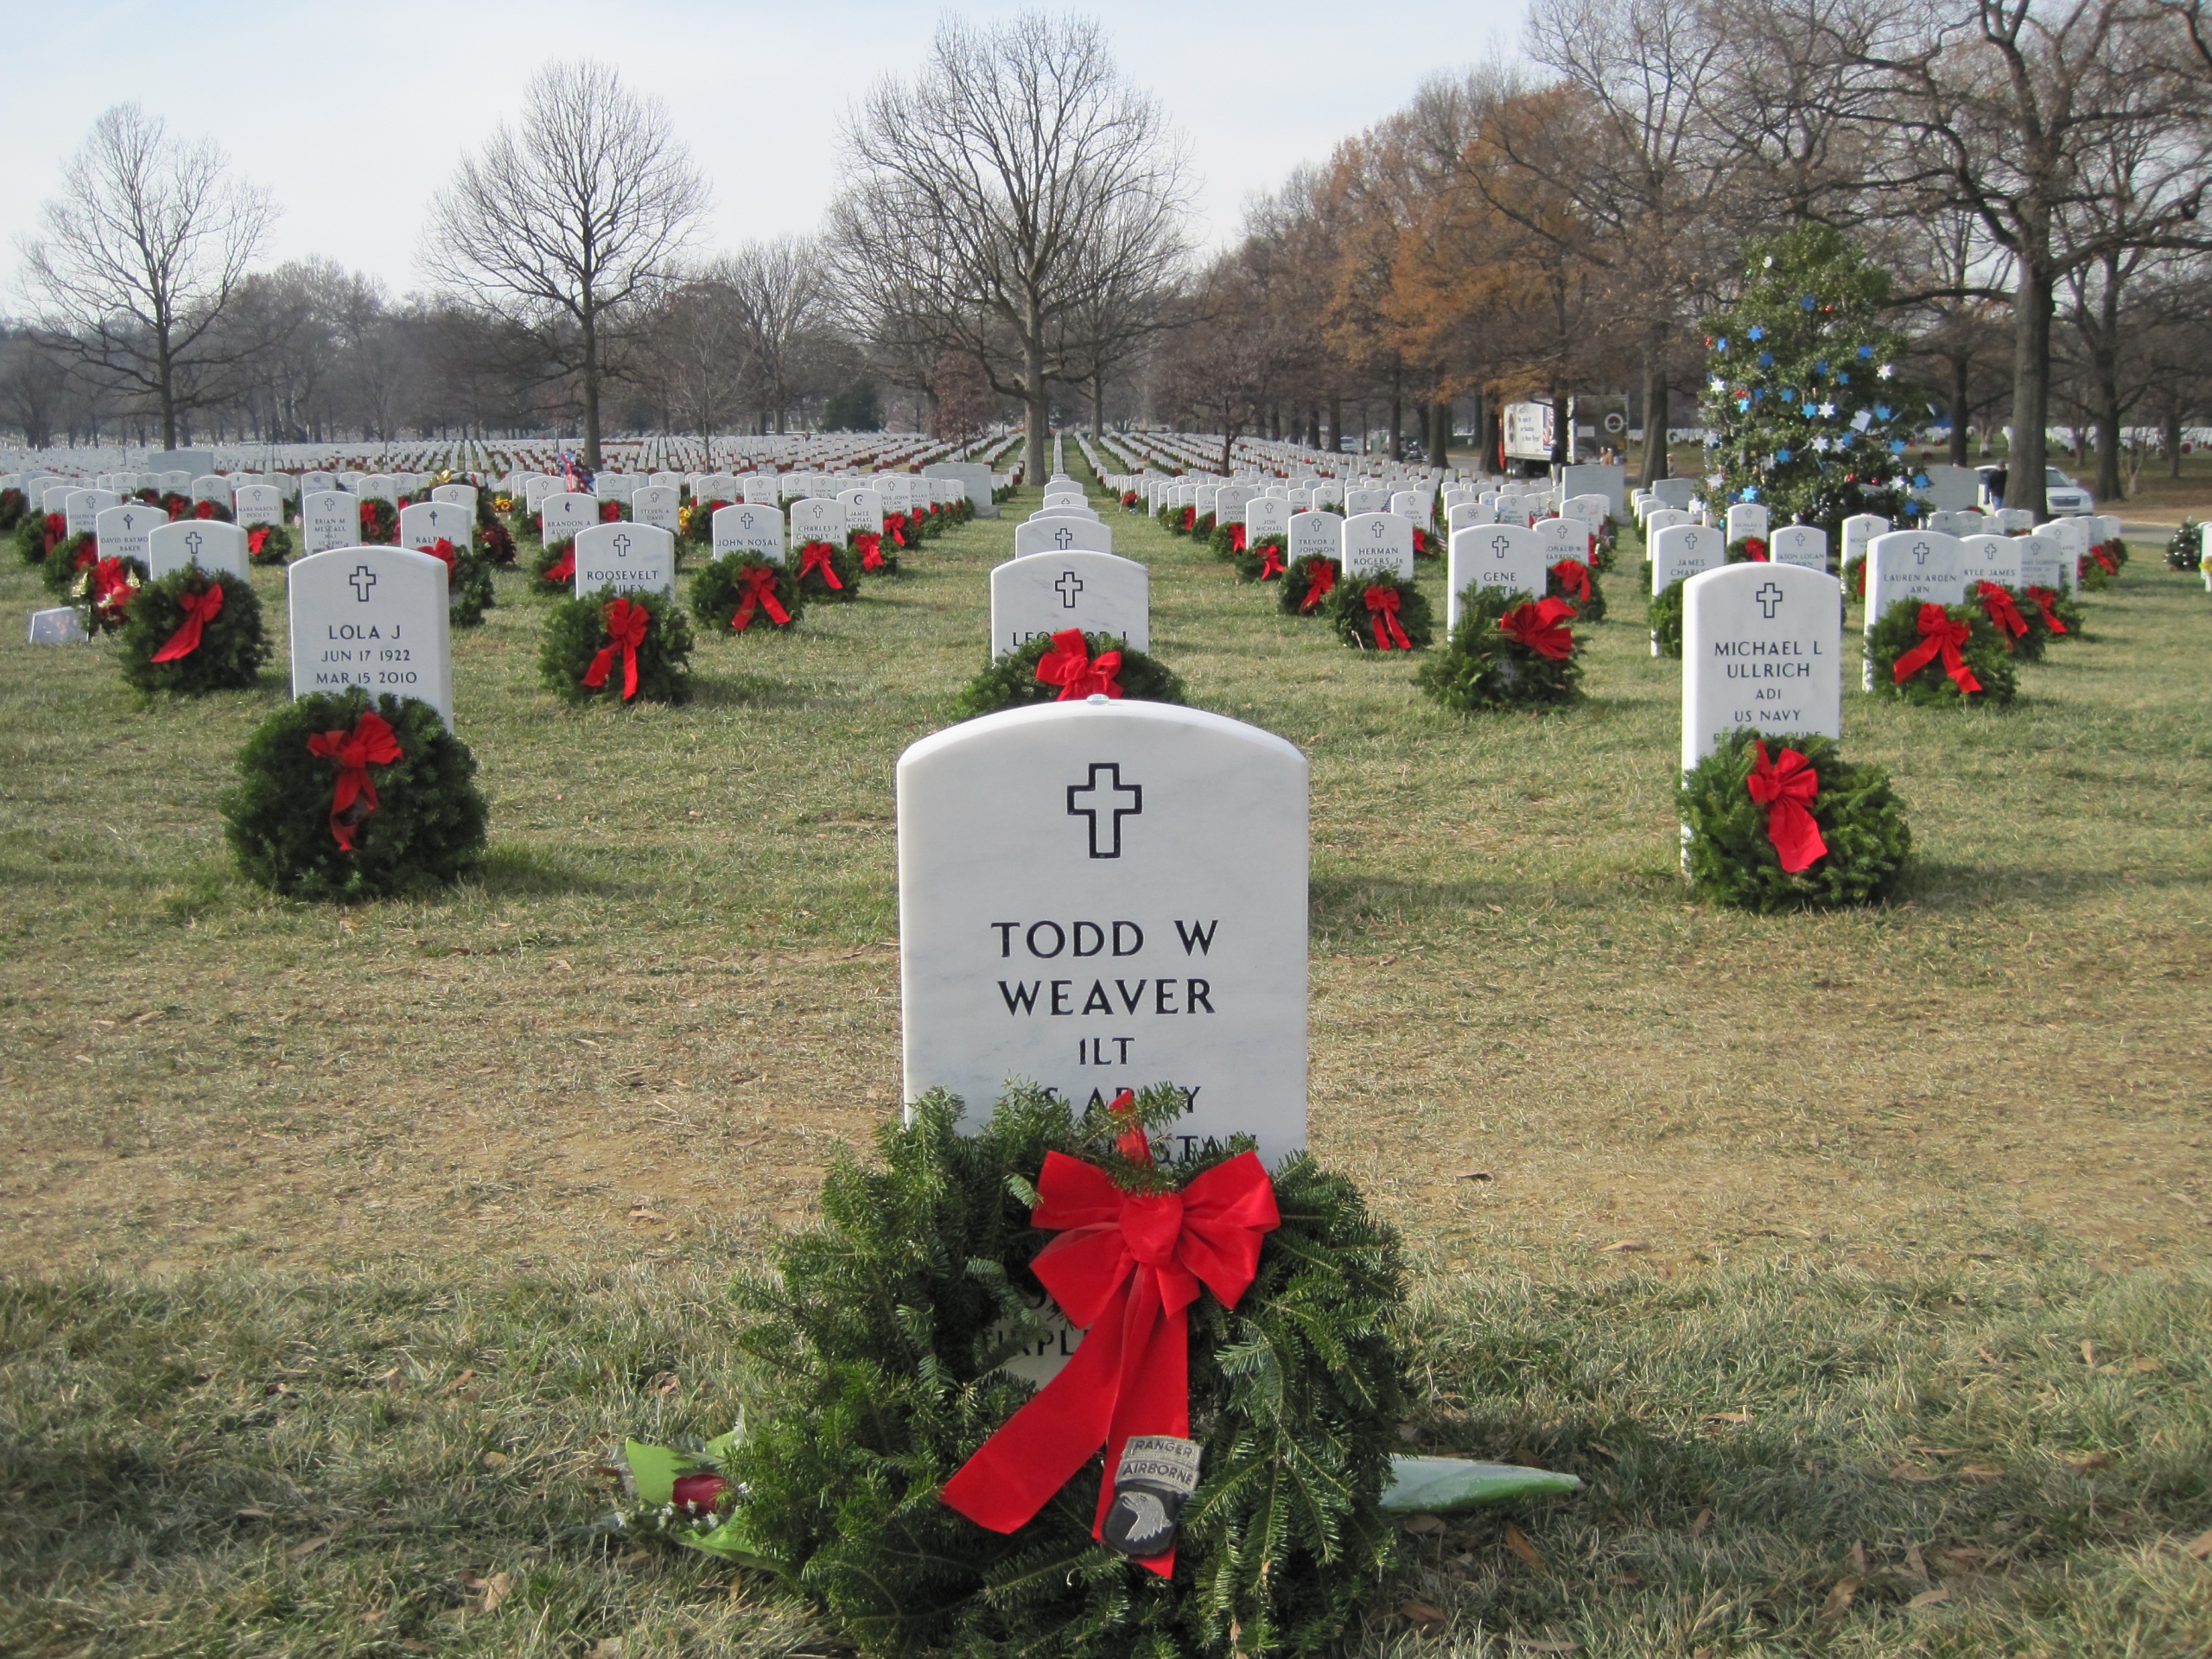 twweaver-gravesite-photo-by-eileen-horan-december-2010-003